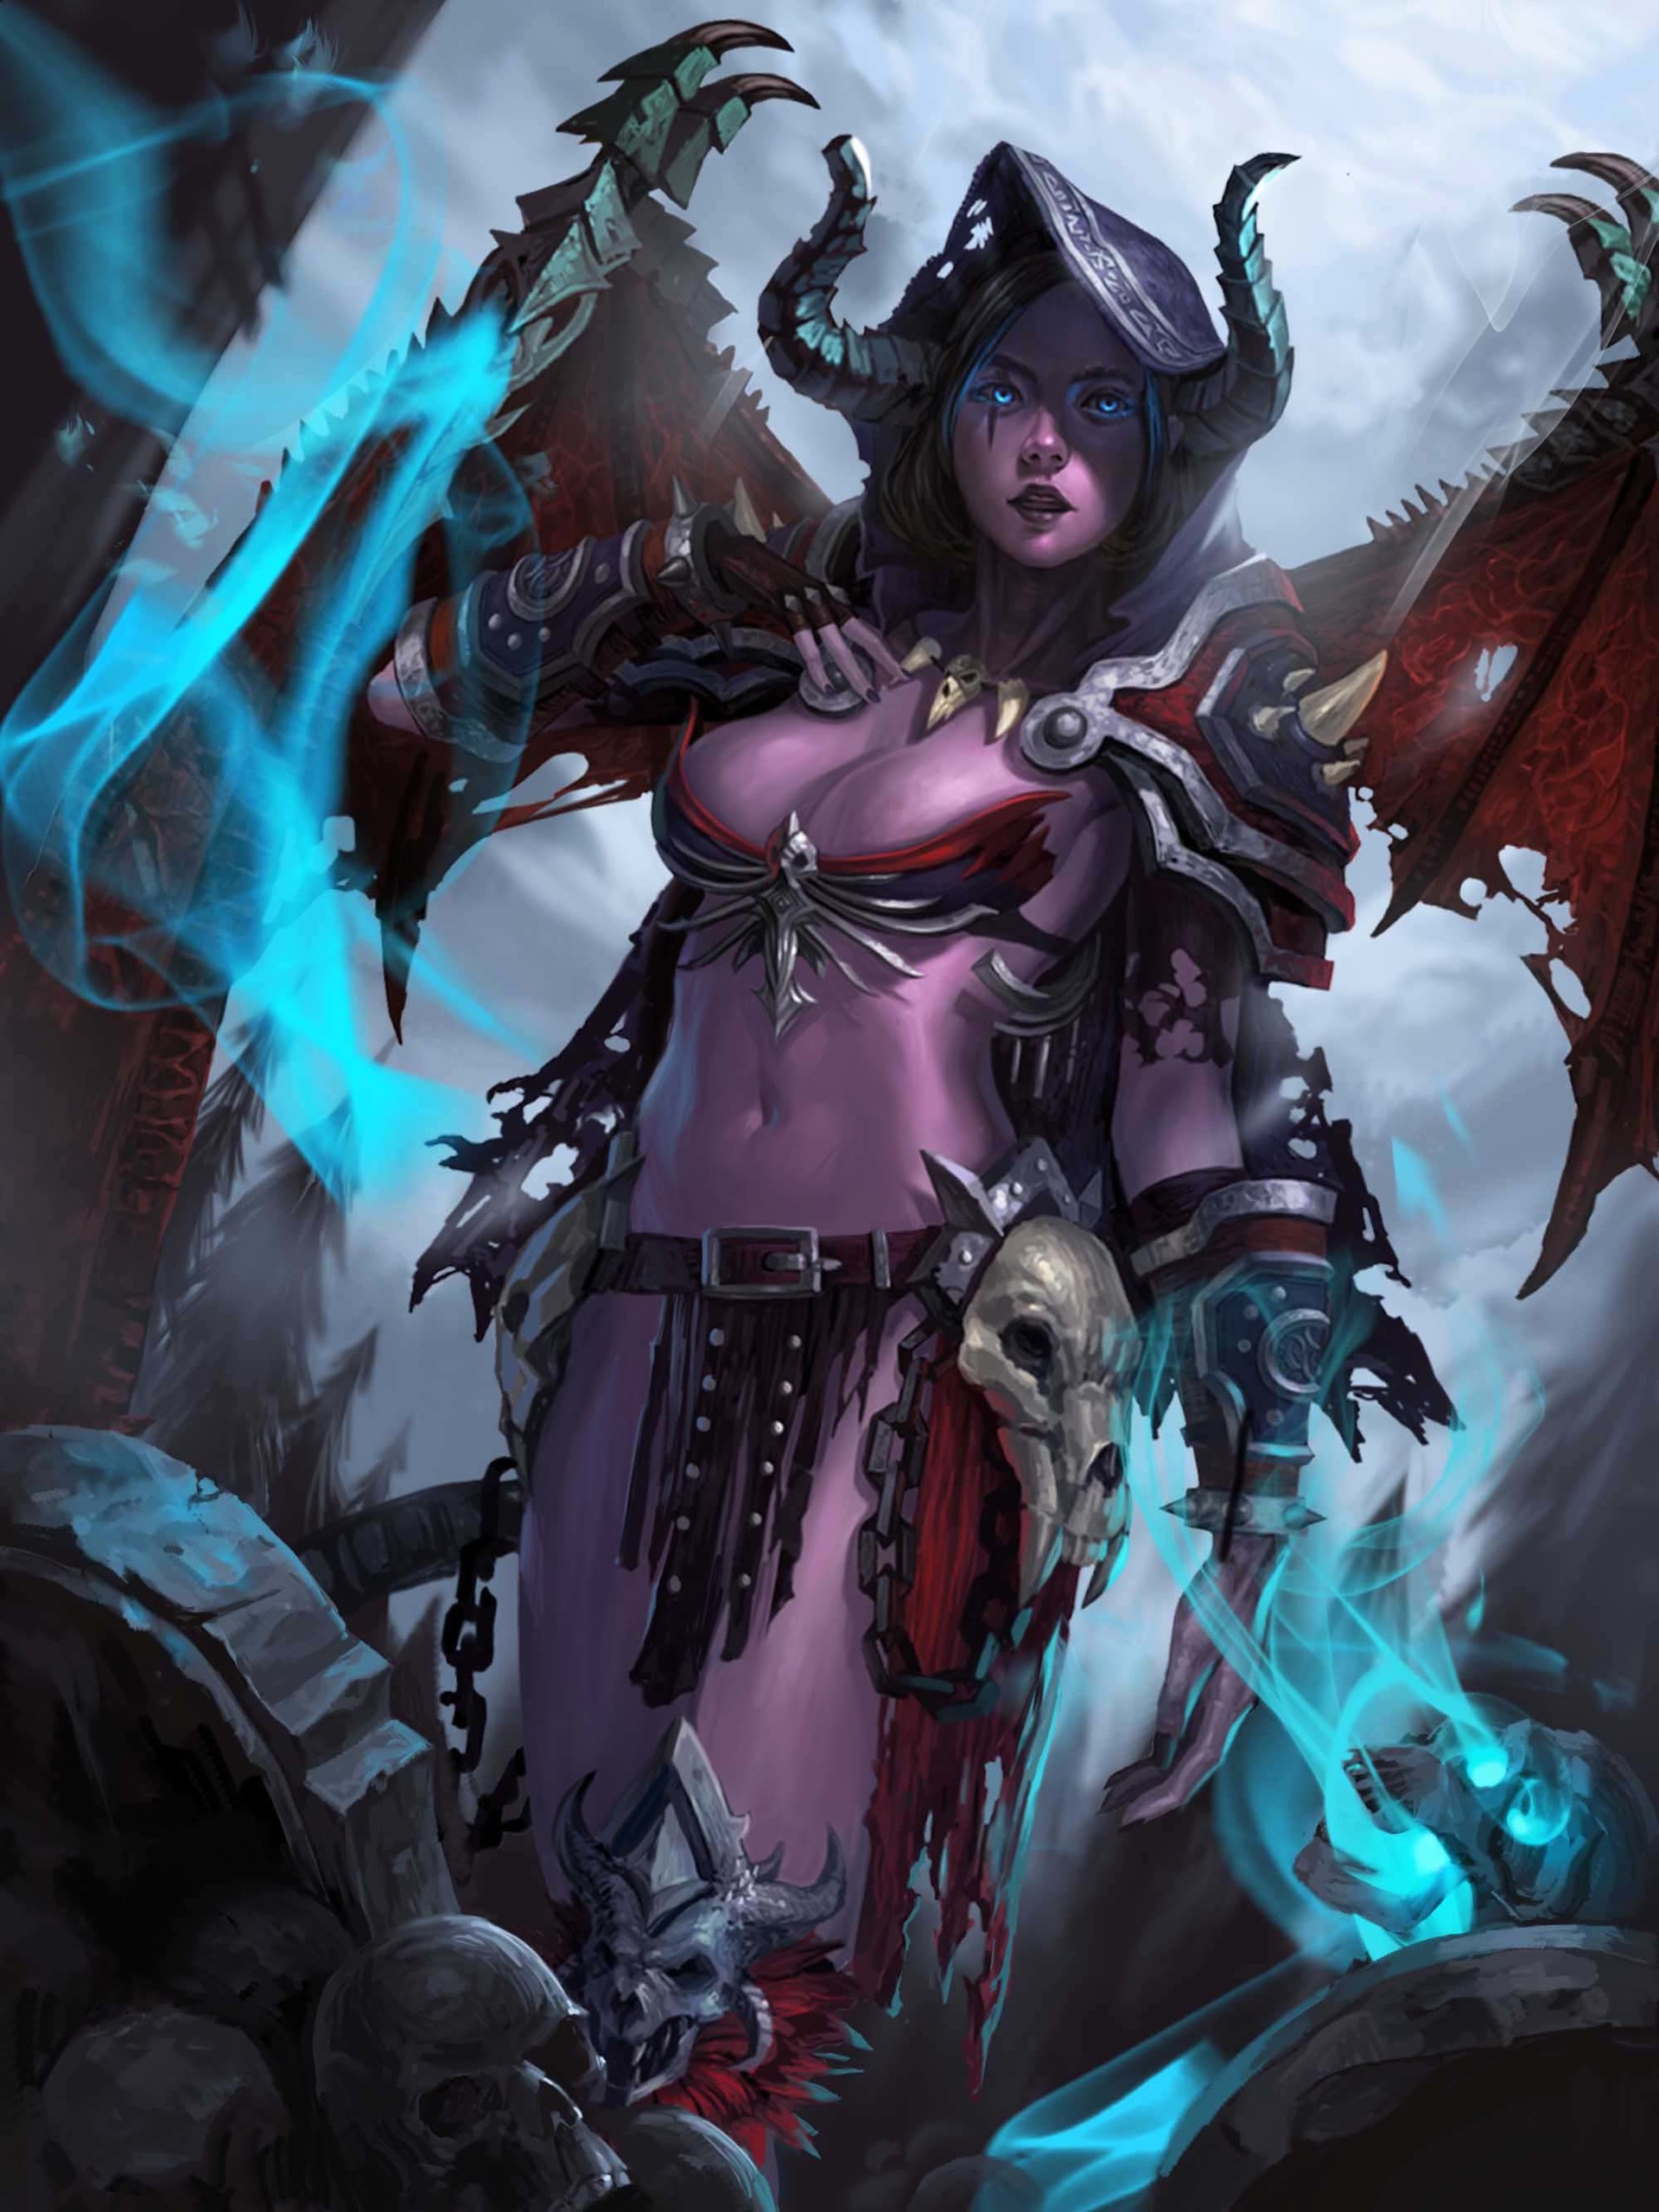 General 1920x2560 fantasy art blue eyes big boobs armor fantasy girl skull boobs glowing eyes belly women horns